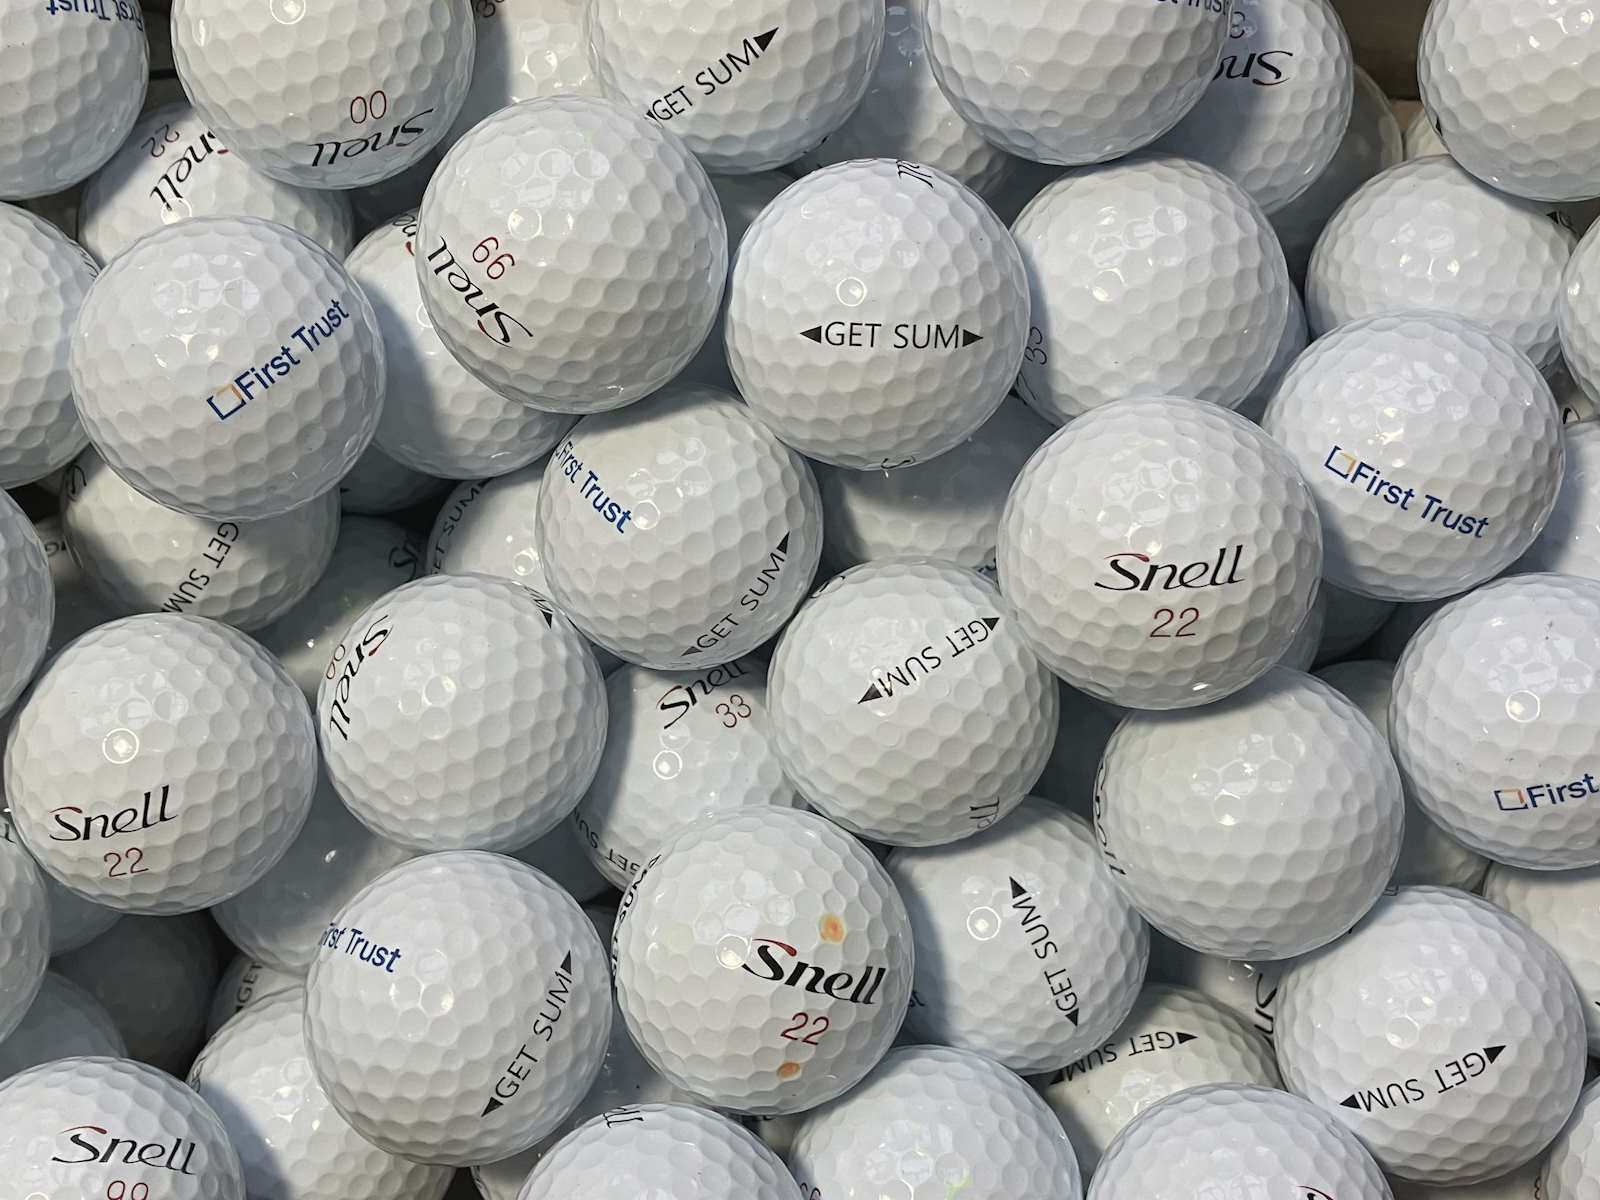 Snell Get Sum Lakeballs - gebrauchte Get Sum Golfbälle AAA/AAAA-Qualität